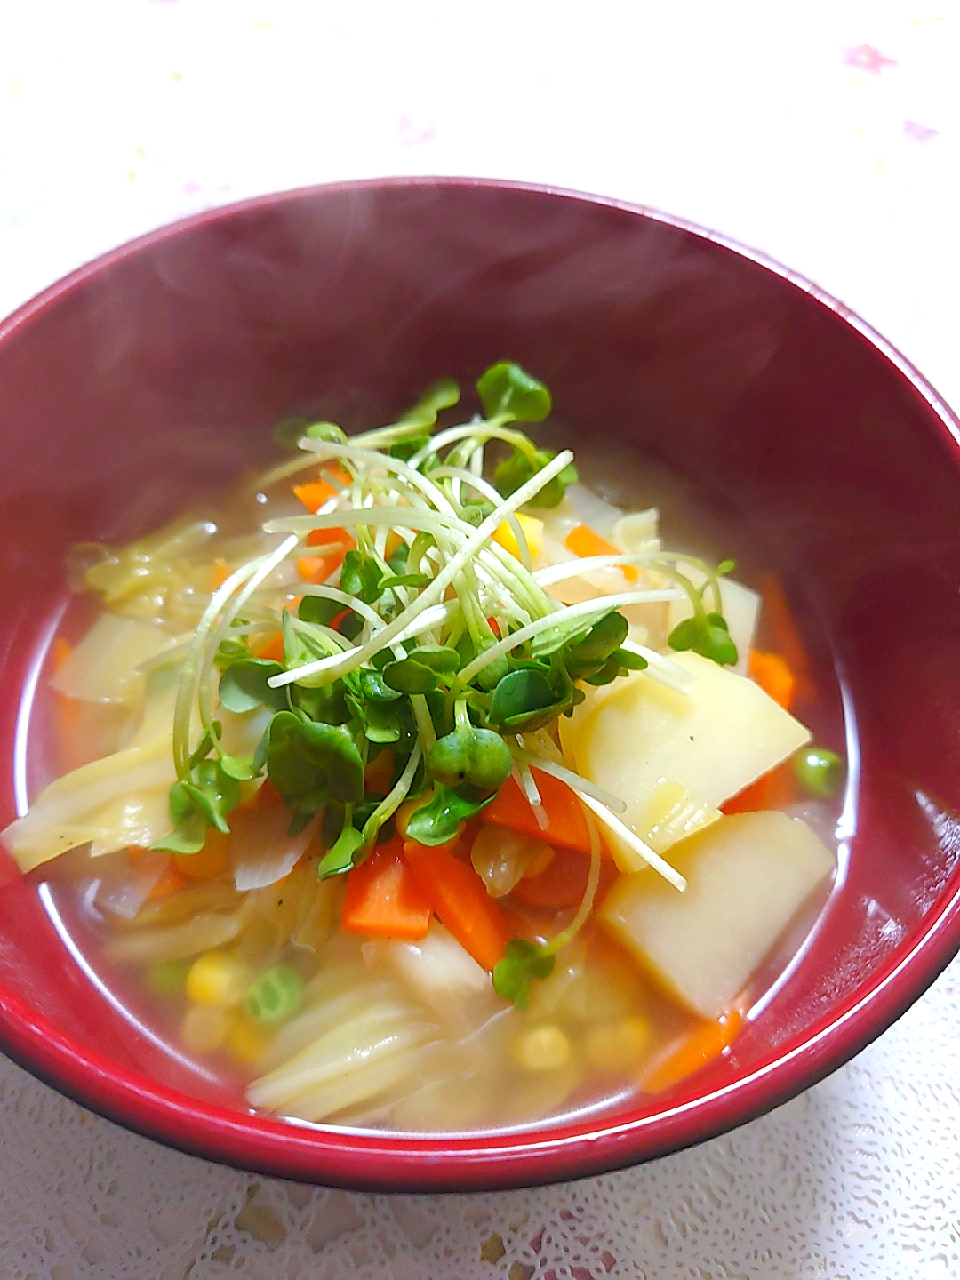 今日の野菜スープ
かいわれトッピング🌱